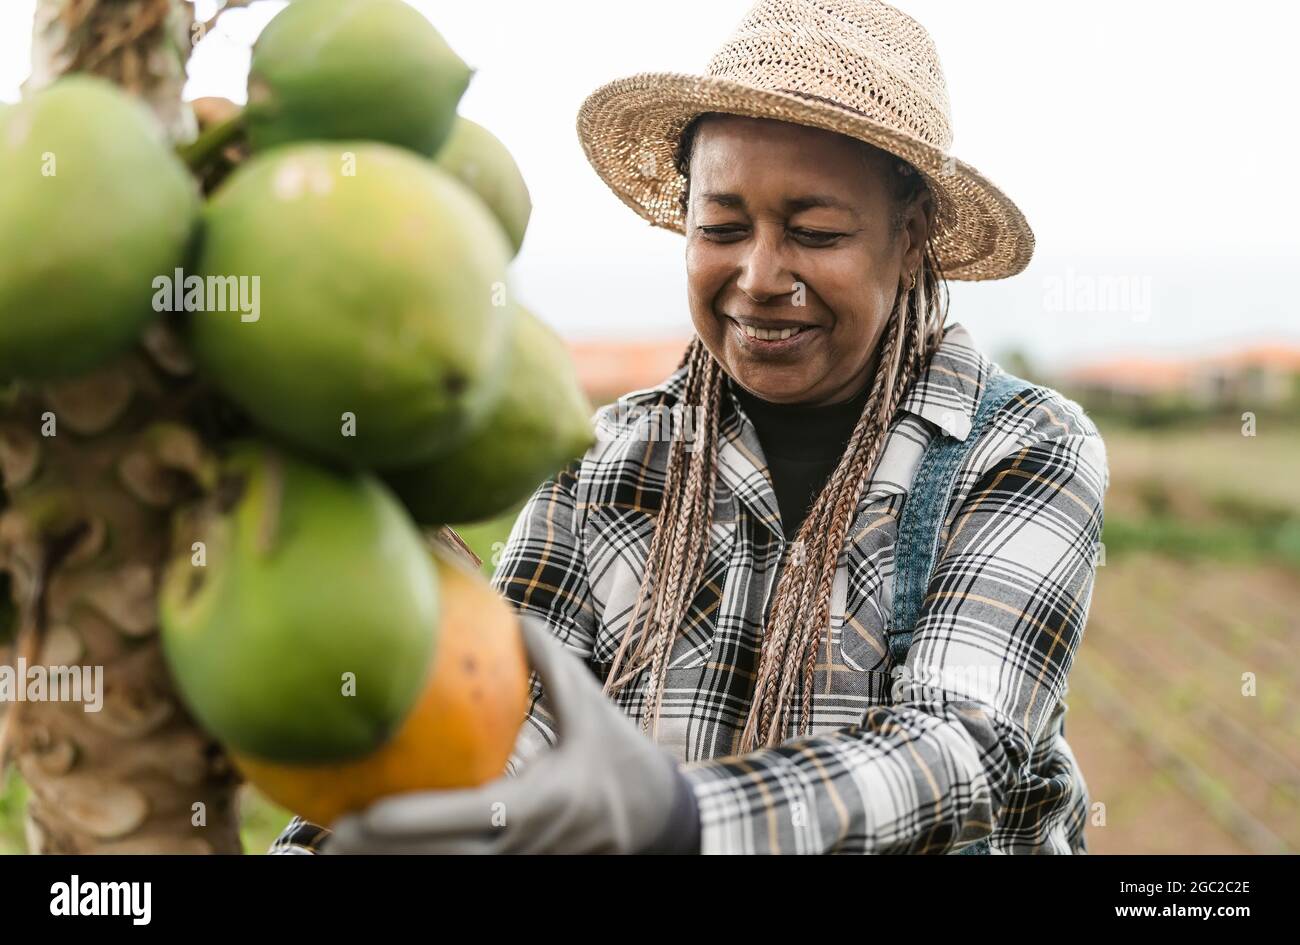 Agriculteur africain senior travaillant dans la campagne récolte de fruits tropicaux papaye - concept de vie de la ferme Banque D'Images